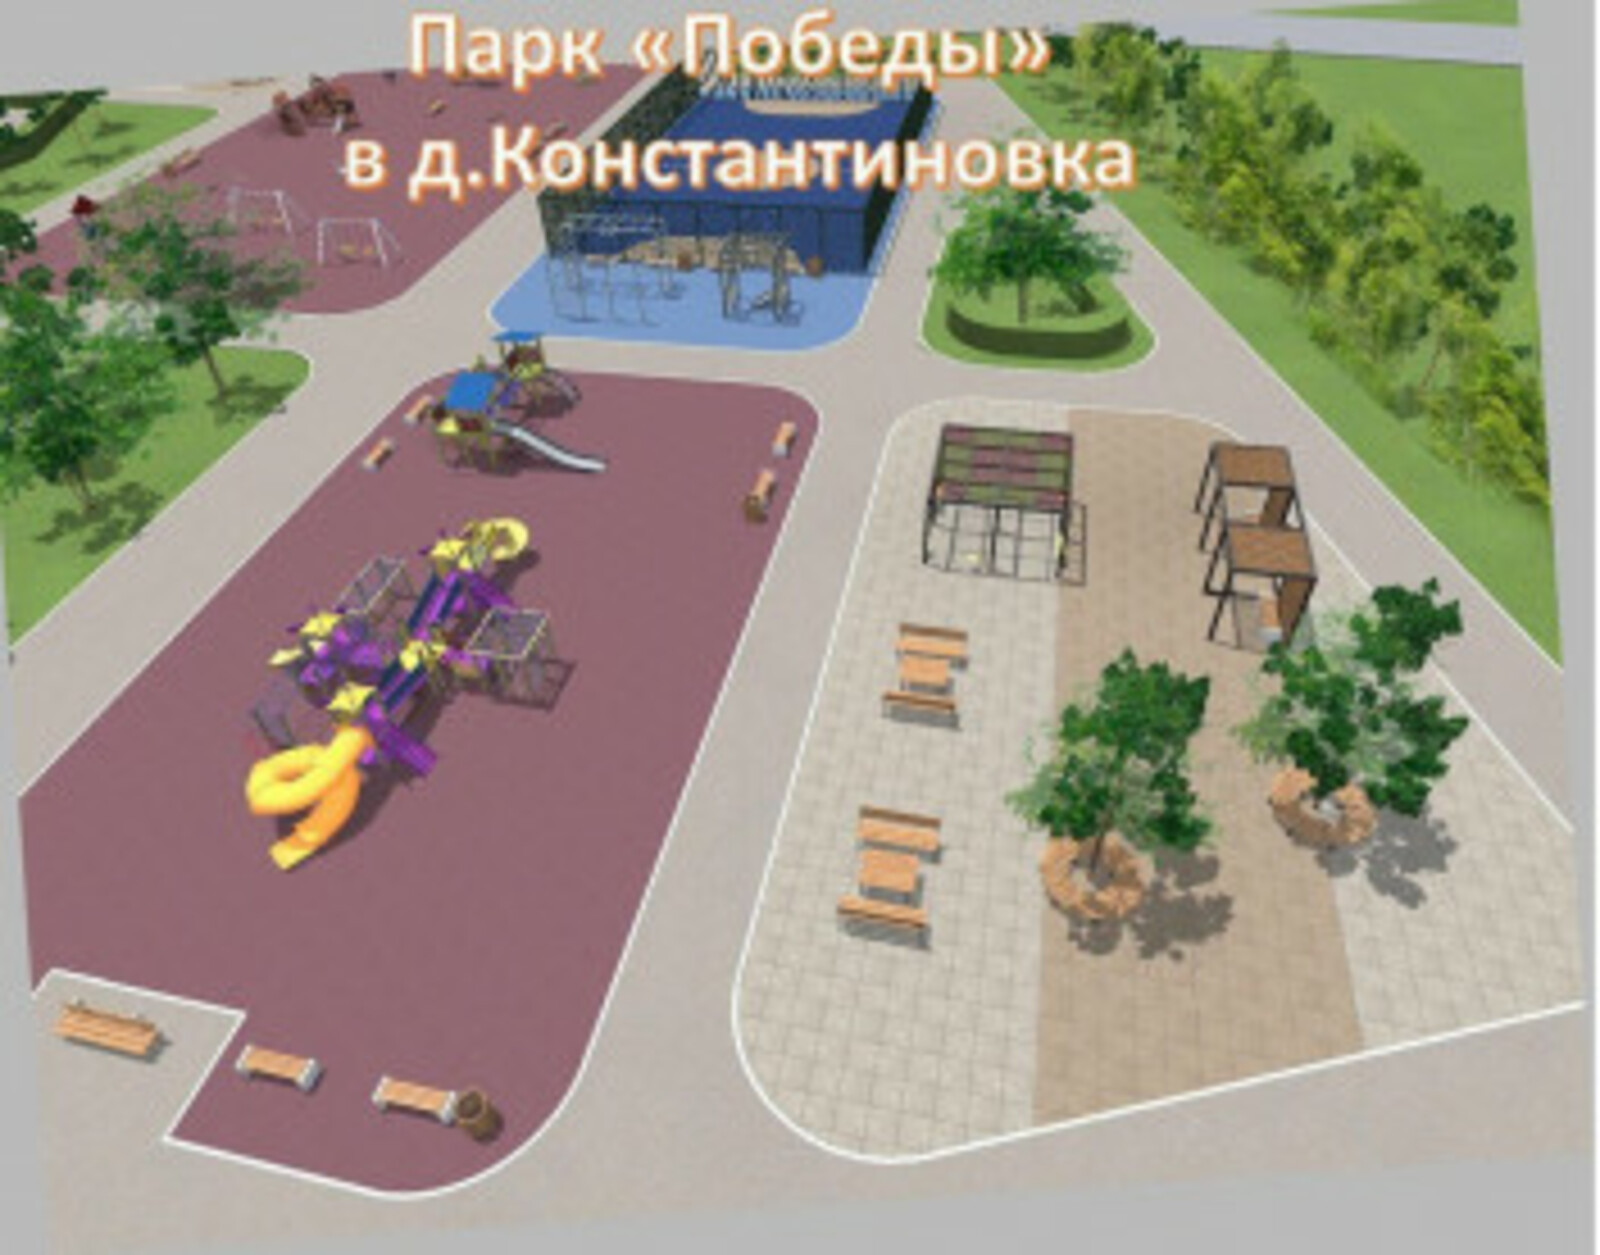 Жители д.Константиновка могут поддержать проект завершения благоустройства Парка Победы